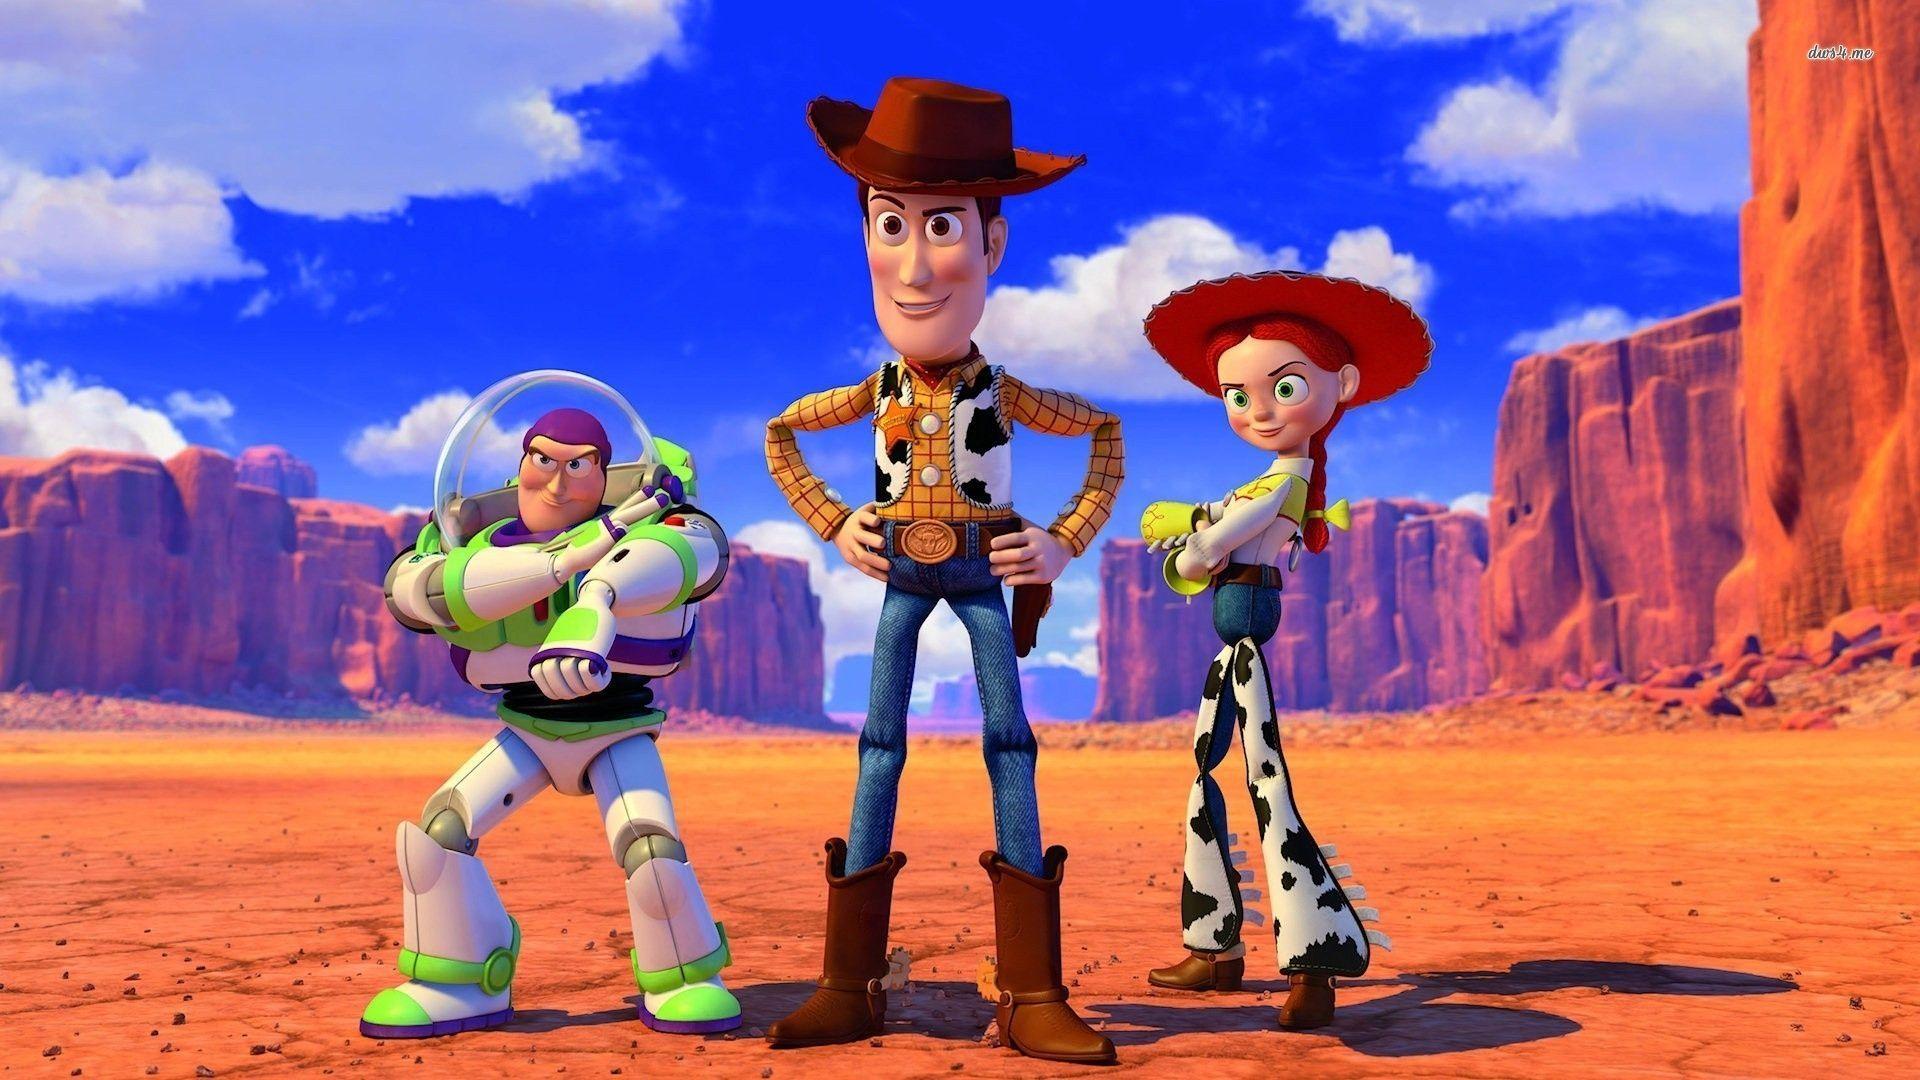 Buzz Lightyear, Sheriff Woody, and Jessie, Toy Story